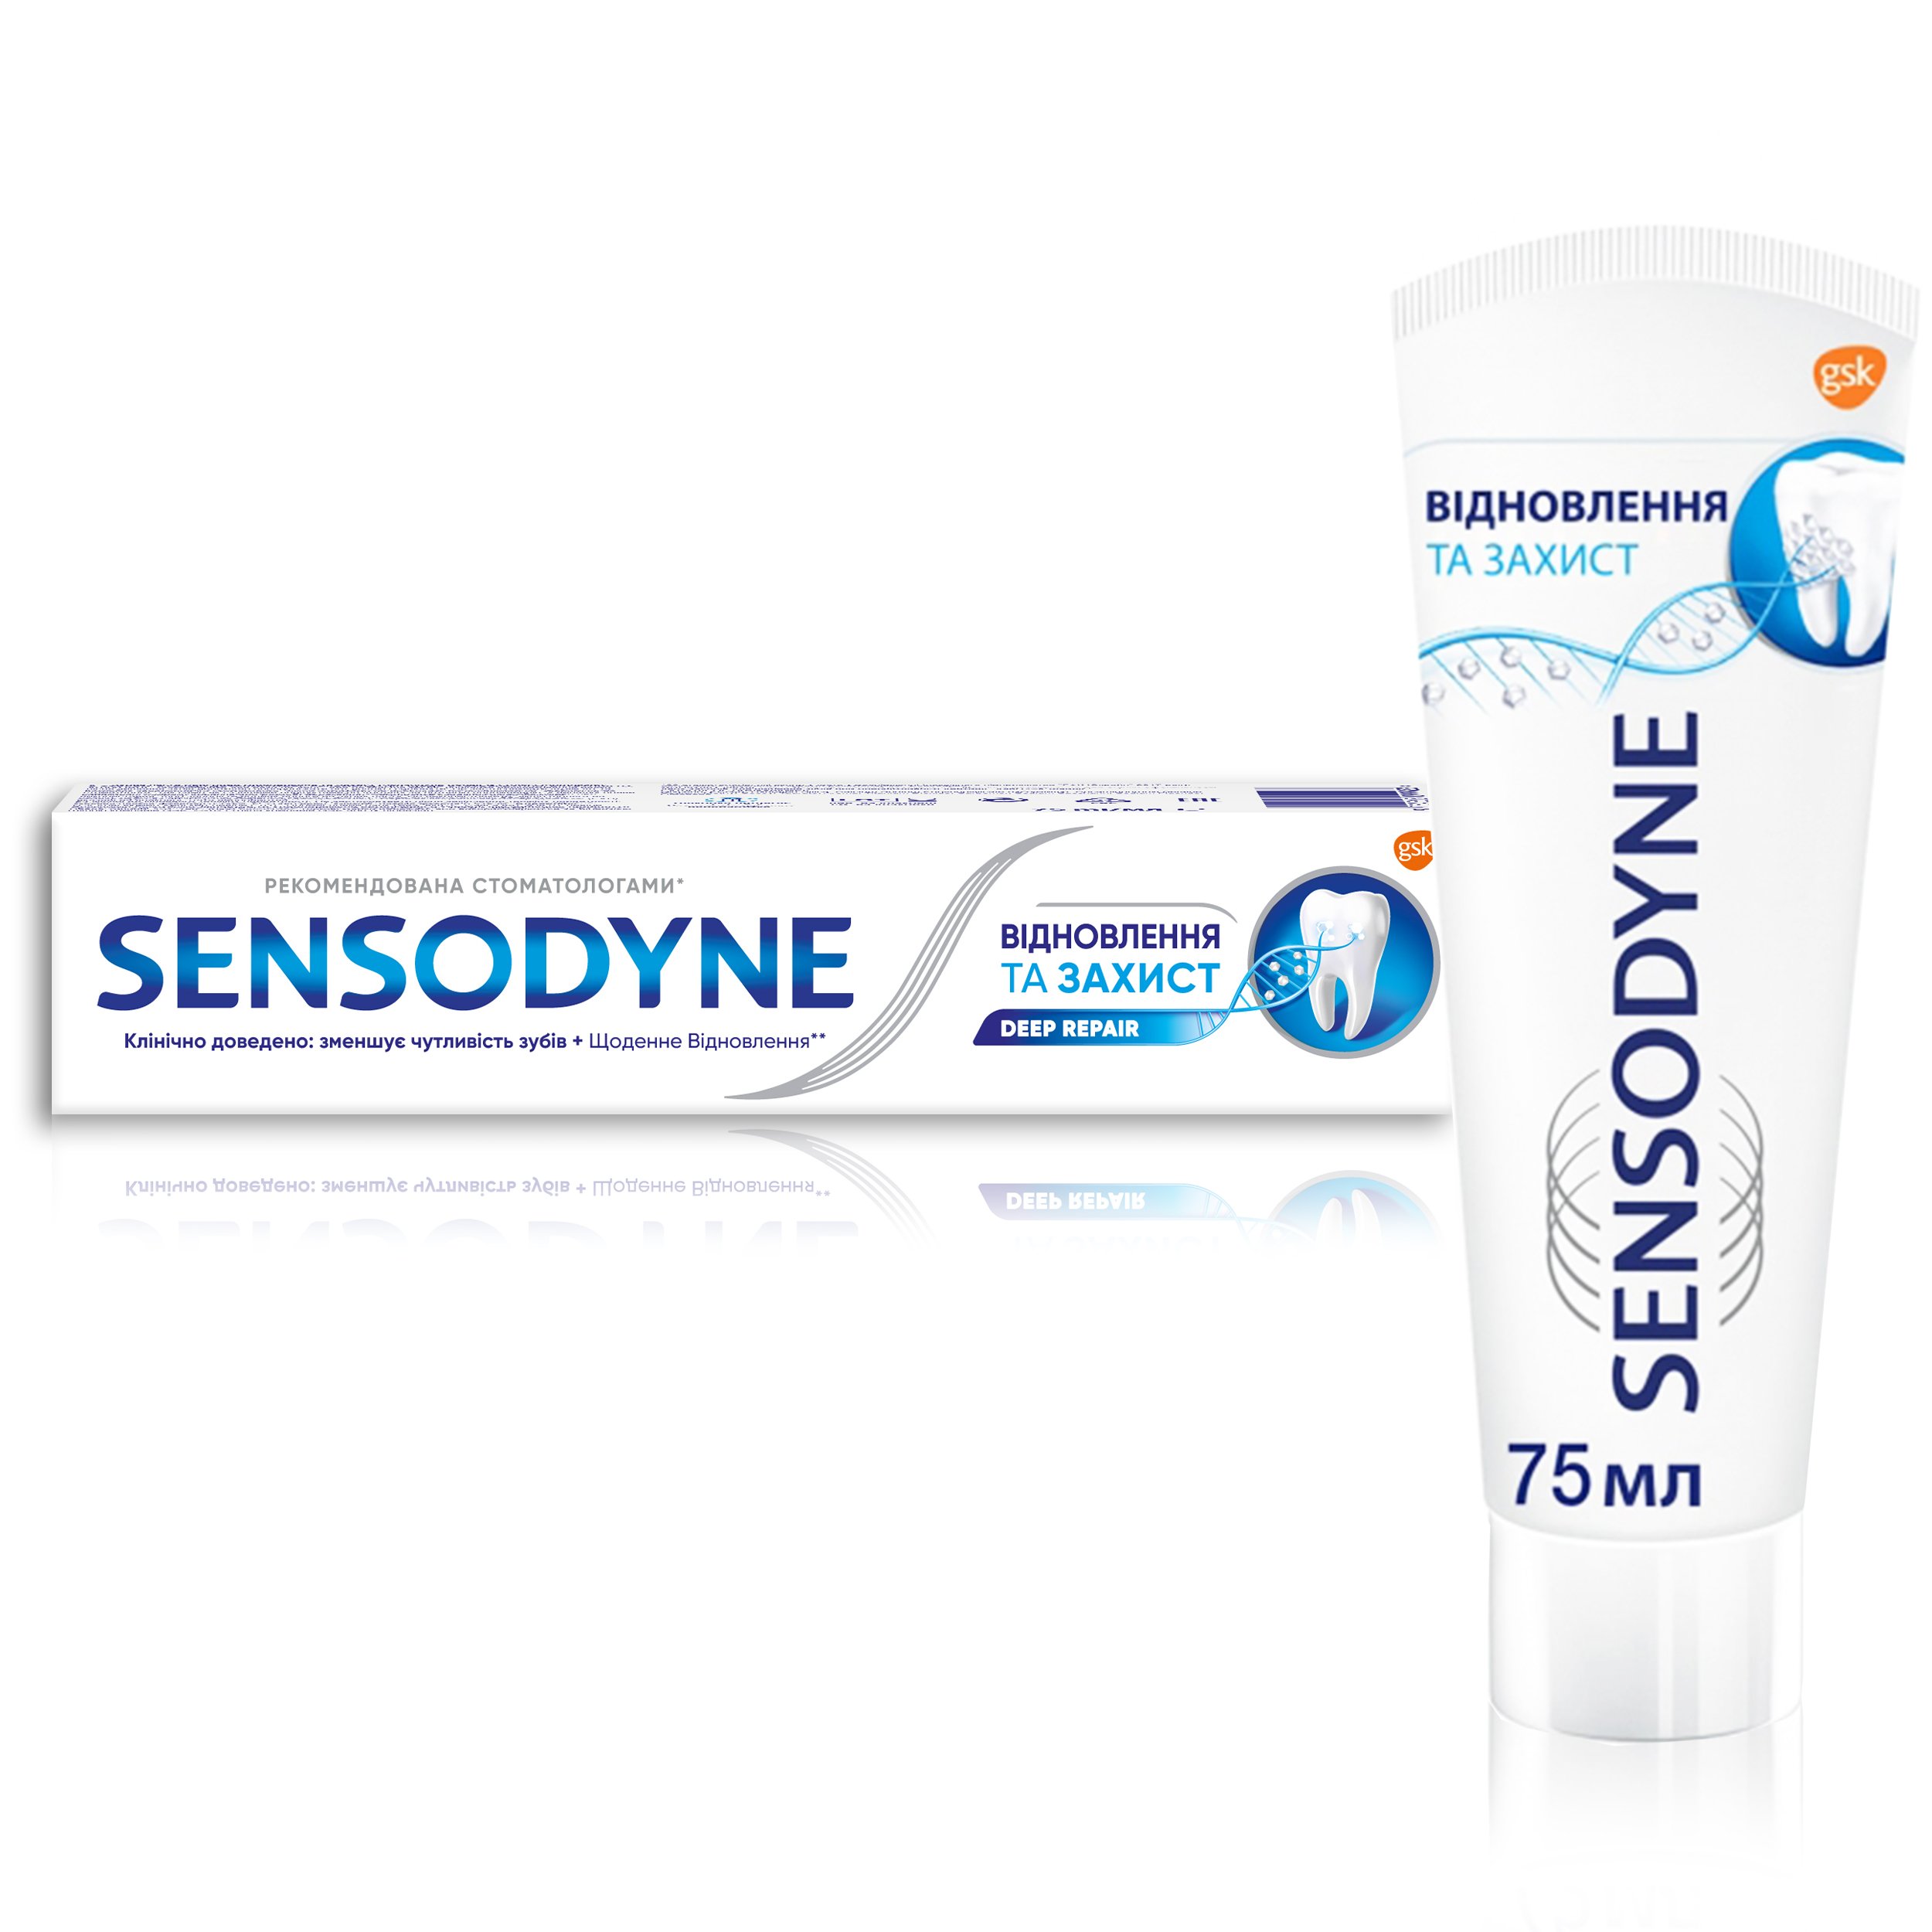 Зубна паста Sensodyne Відновлення та Захист, 75 мл - фото 5